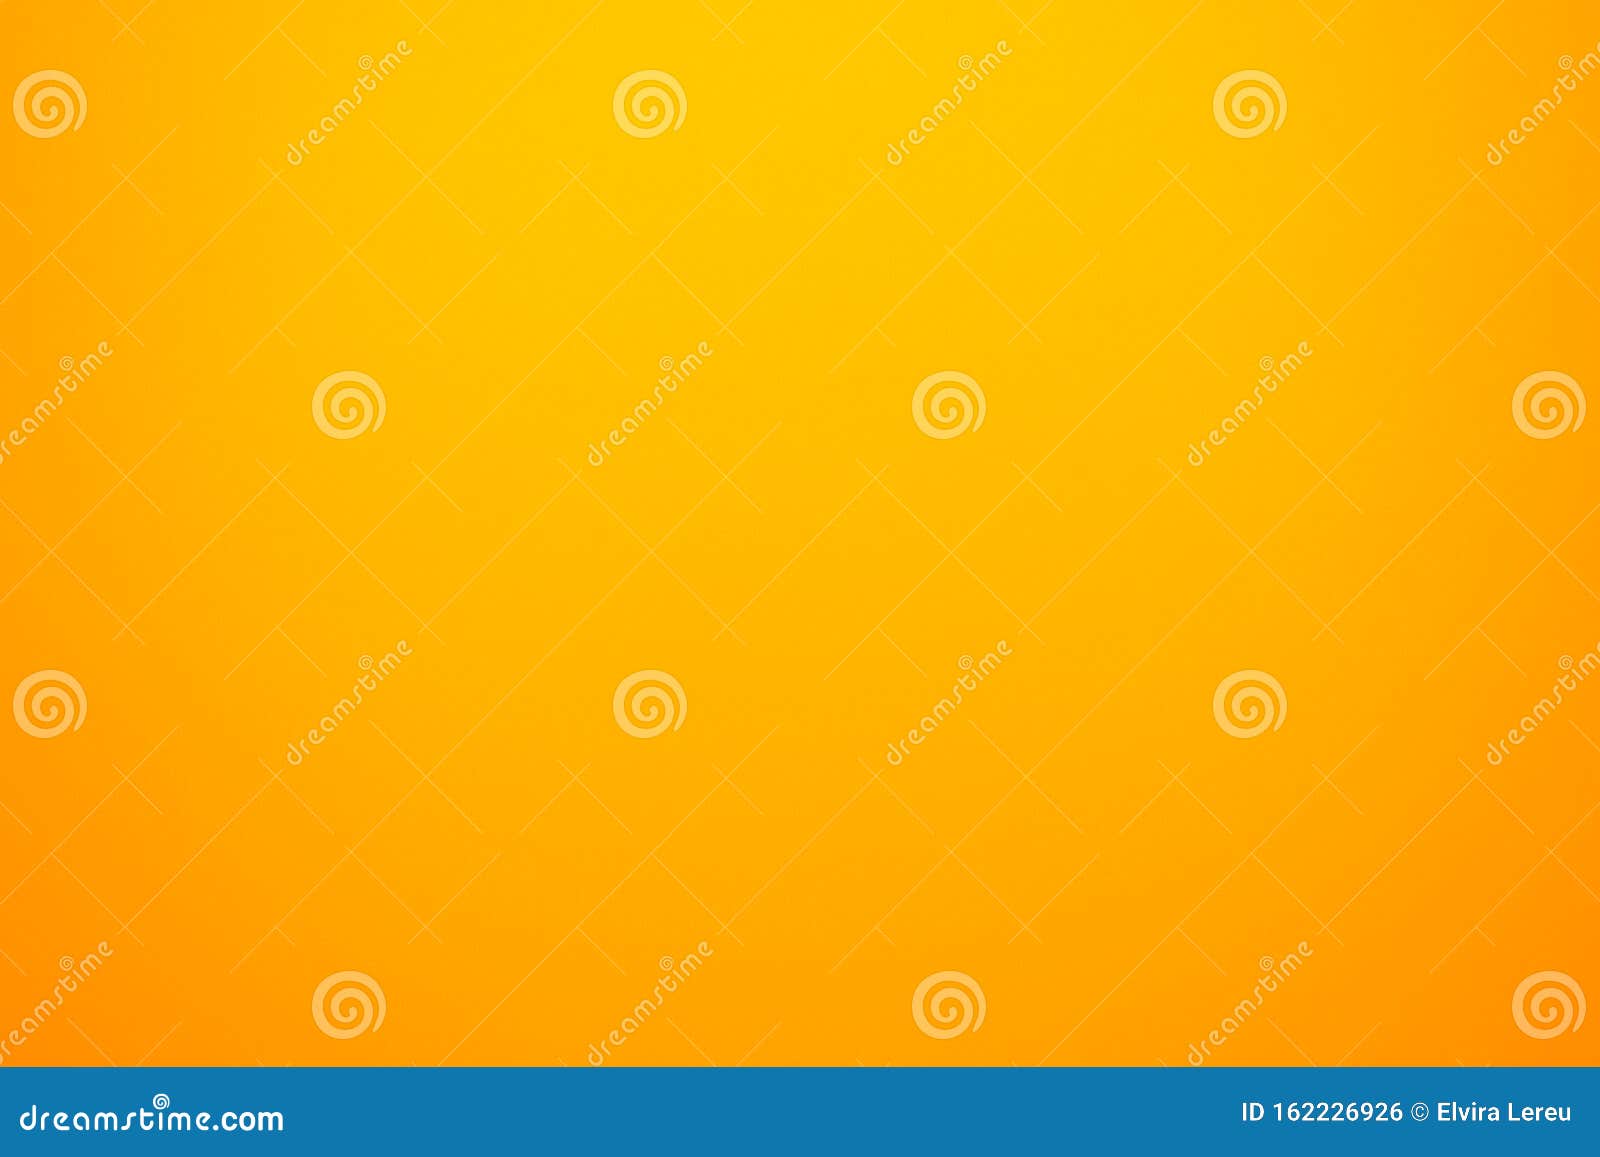 Nền vải cam vàng cho banner hoặc web sẽ mang lại cho trang web của bạn một vẻ ngoài tươi sáng và hấp dẫn. Hãy nhấn vào hình ảnh liên quan để xem một ví dụ về những thiết kế banner hoặc web sử dụng nền vải cam vàng đầy sinh động.